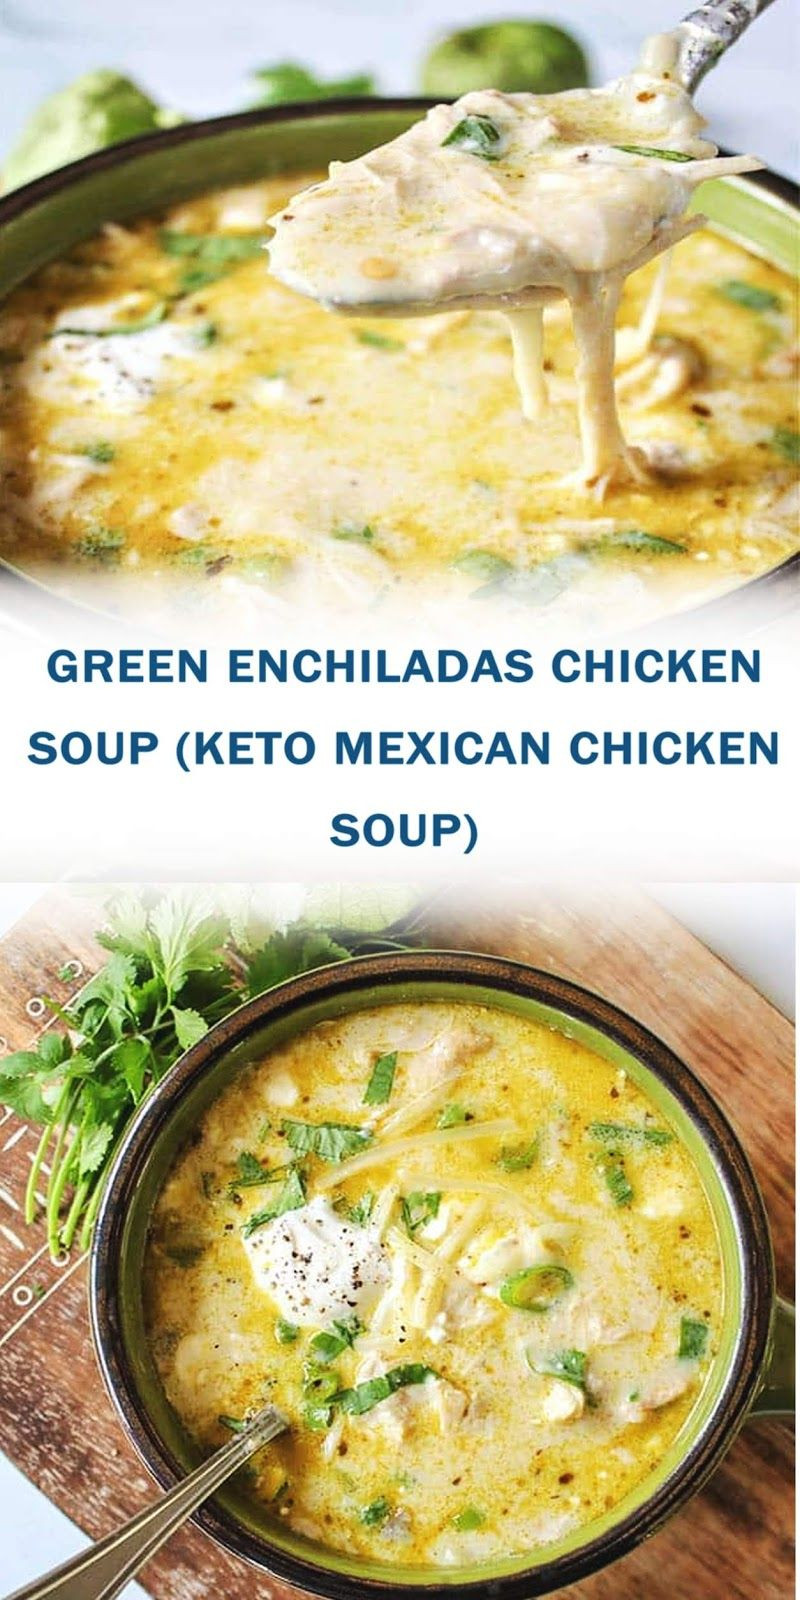 Mexican Keto Recipes Chicken Enchiladas
 GREEN ENCHILADAS CHICKEN SOUP KETO MEXICAN CHICKEN SOUP